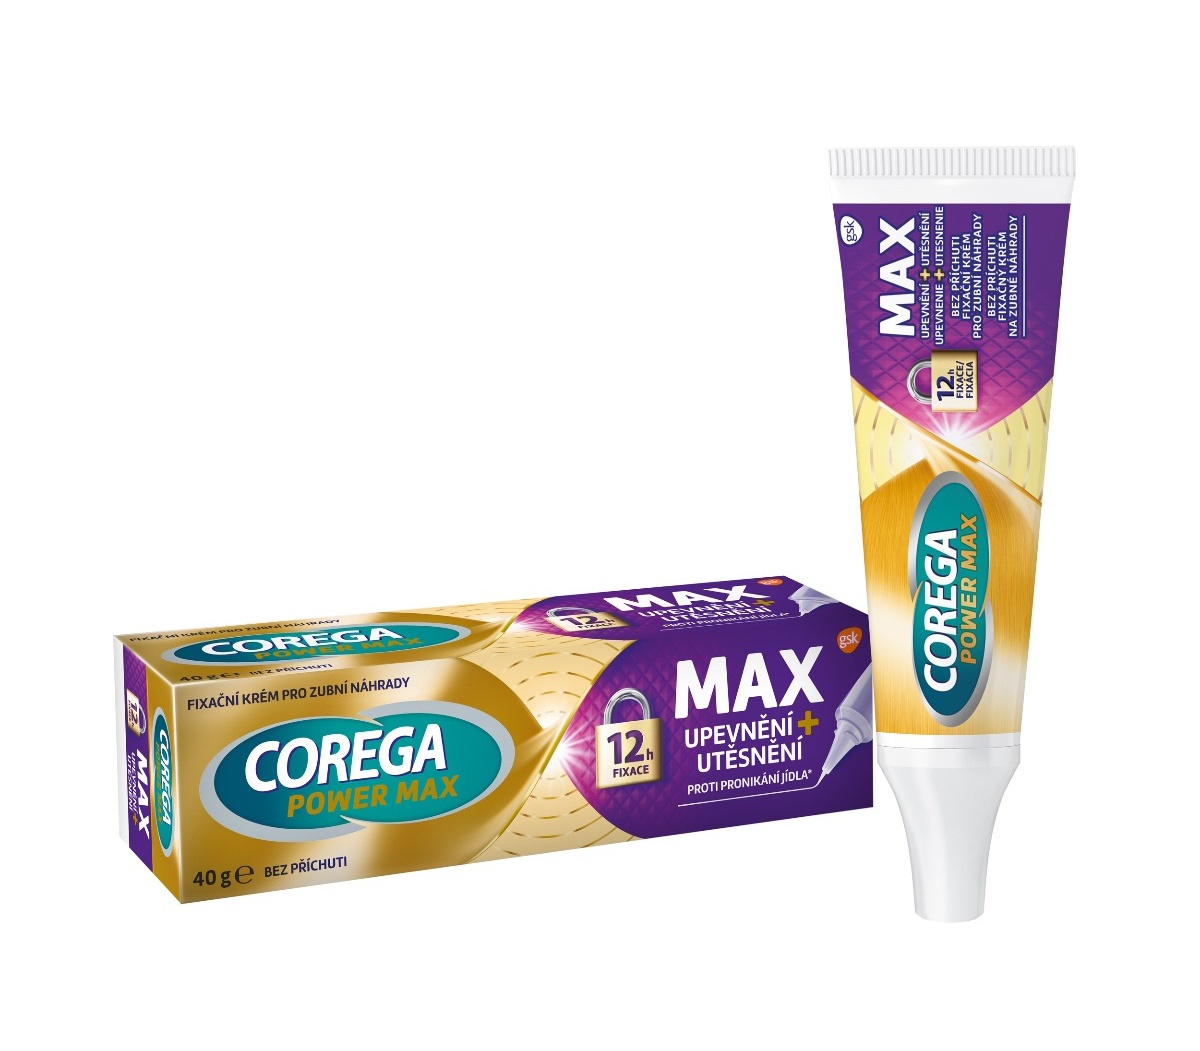 Corega Power Max Upevnění + Utěsnění fixační krém 40 g Corega